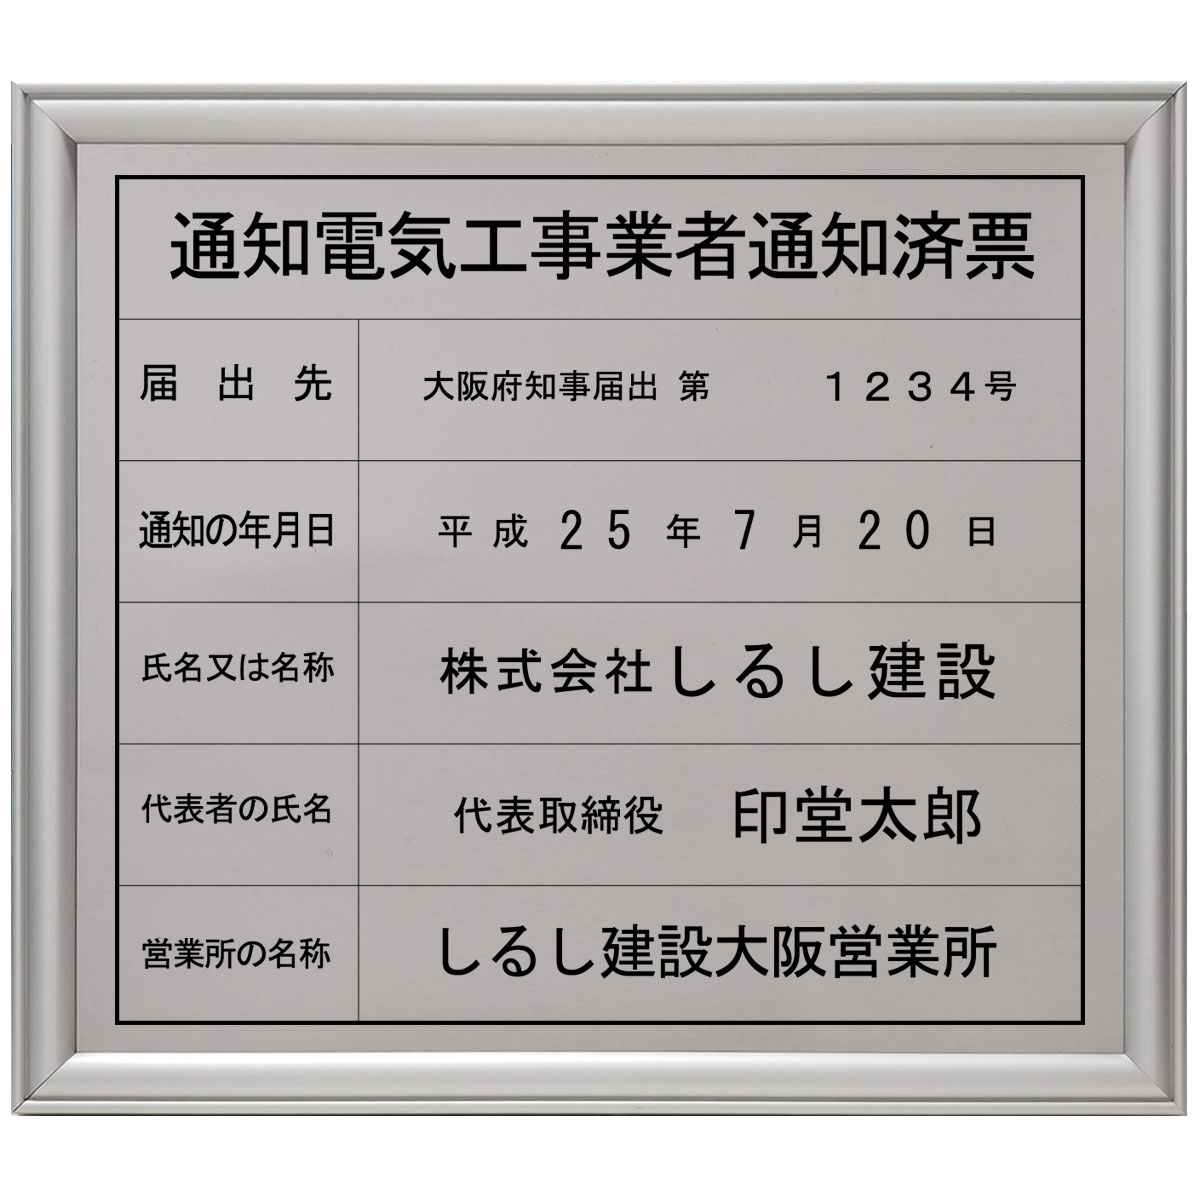 画像1: 通知電気工事業者通知済票ステンレス(SUS304)製プレミアムシルバー (1)